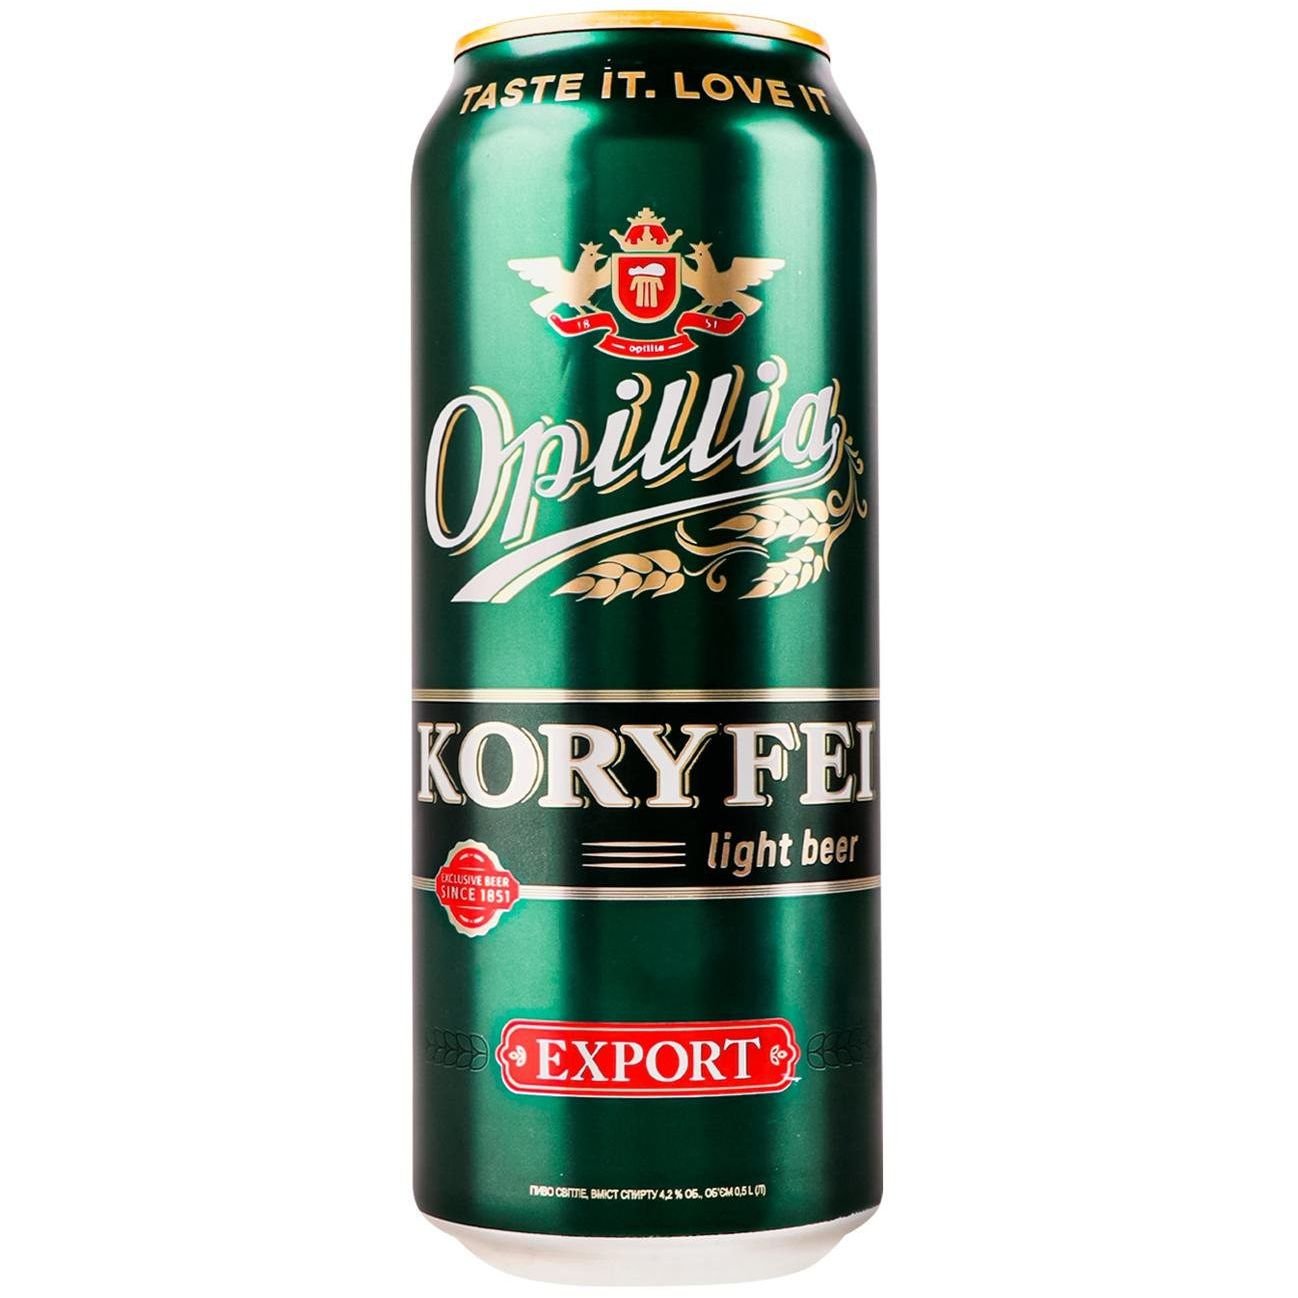 Пиво Опілля Koryfei Export, светлое, фильтрованное, 4.2% 0.5 л ж/б - фото 1